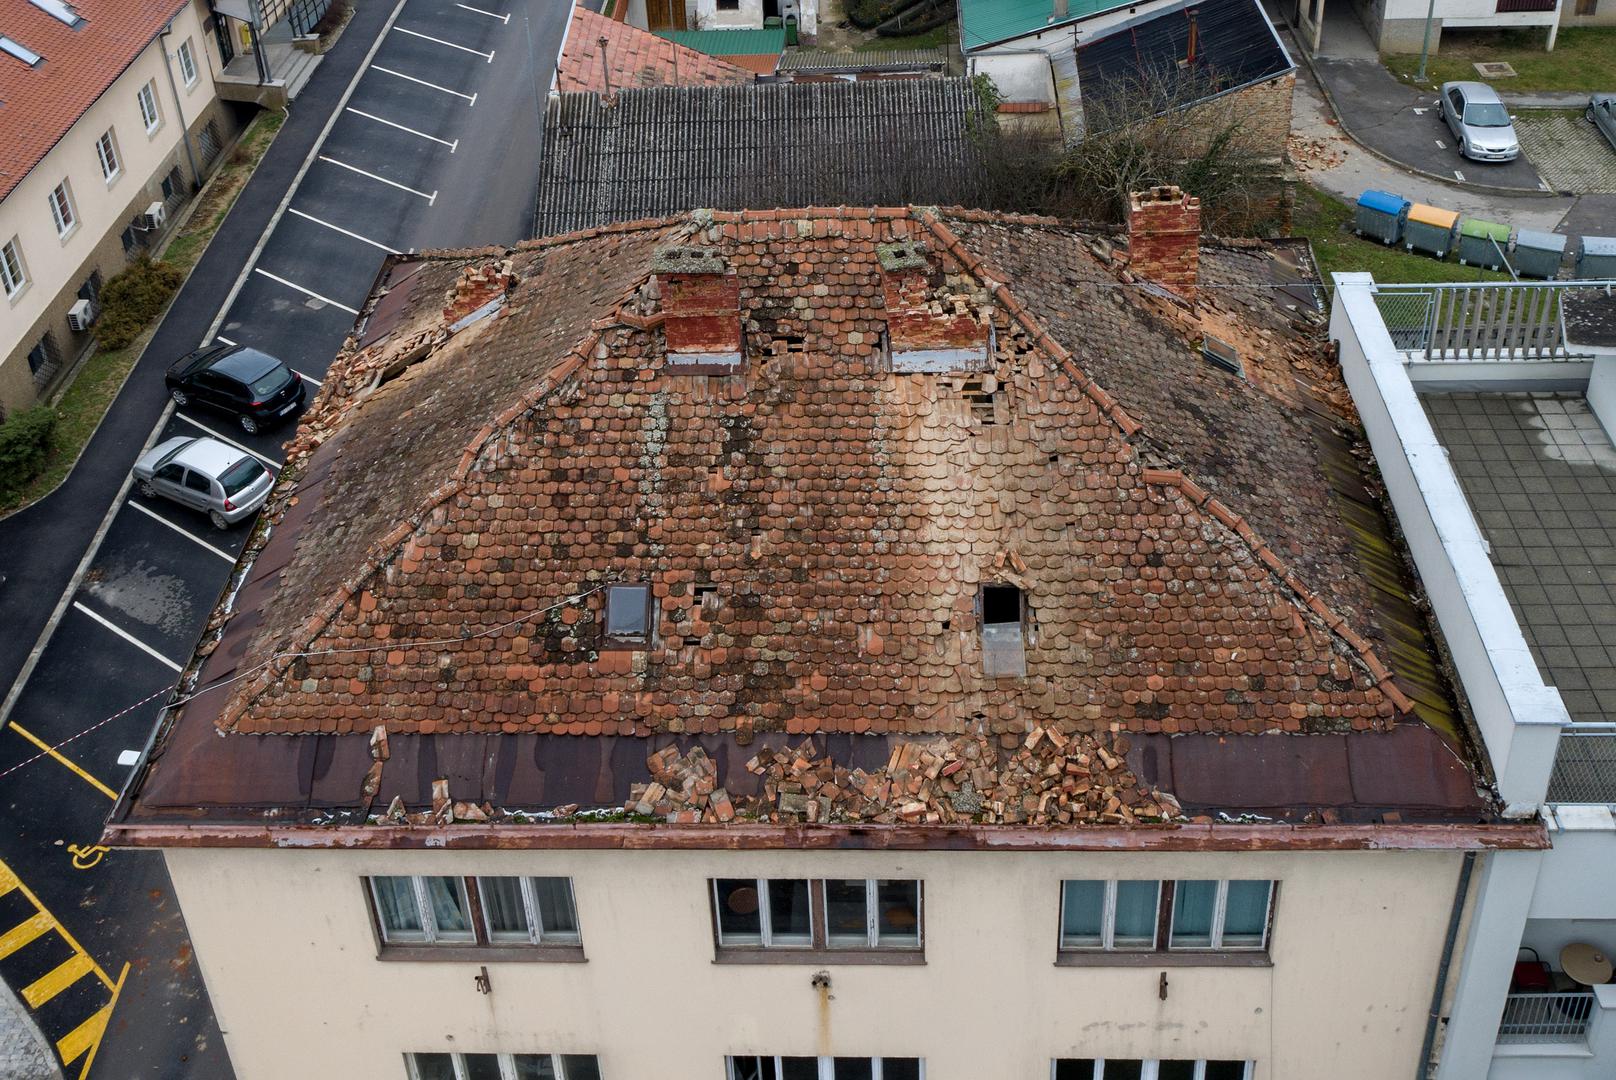 28.12.2020., Petrinja - Pogled iz zraka na ostecene krovove zgrada i kuca stradalih u potresu. 
Photo: Igor Kralj/PIXSELL